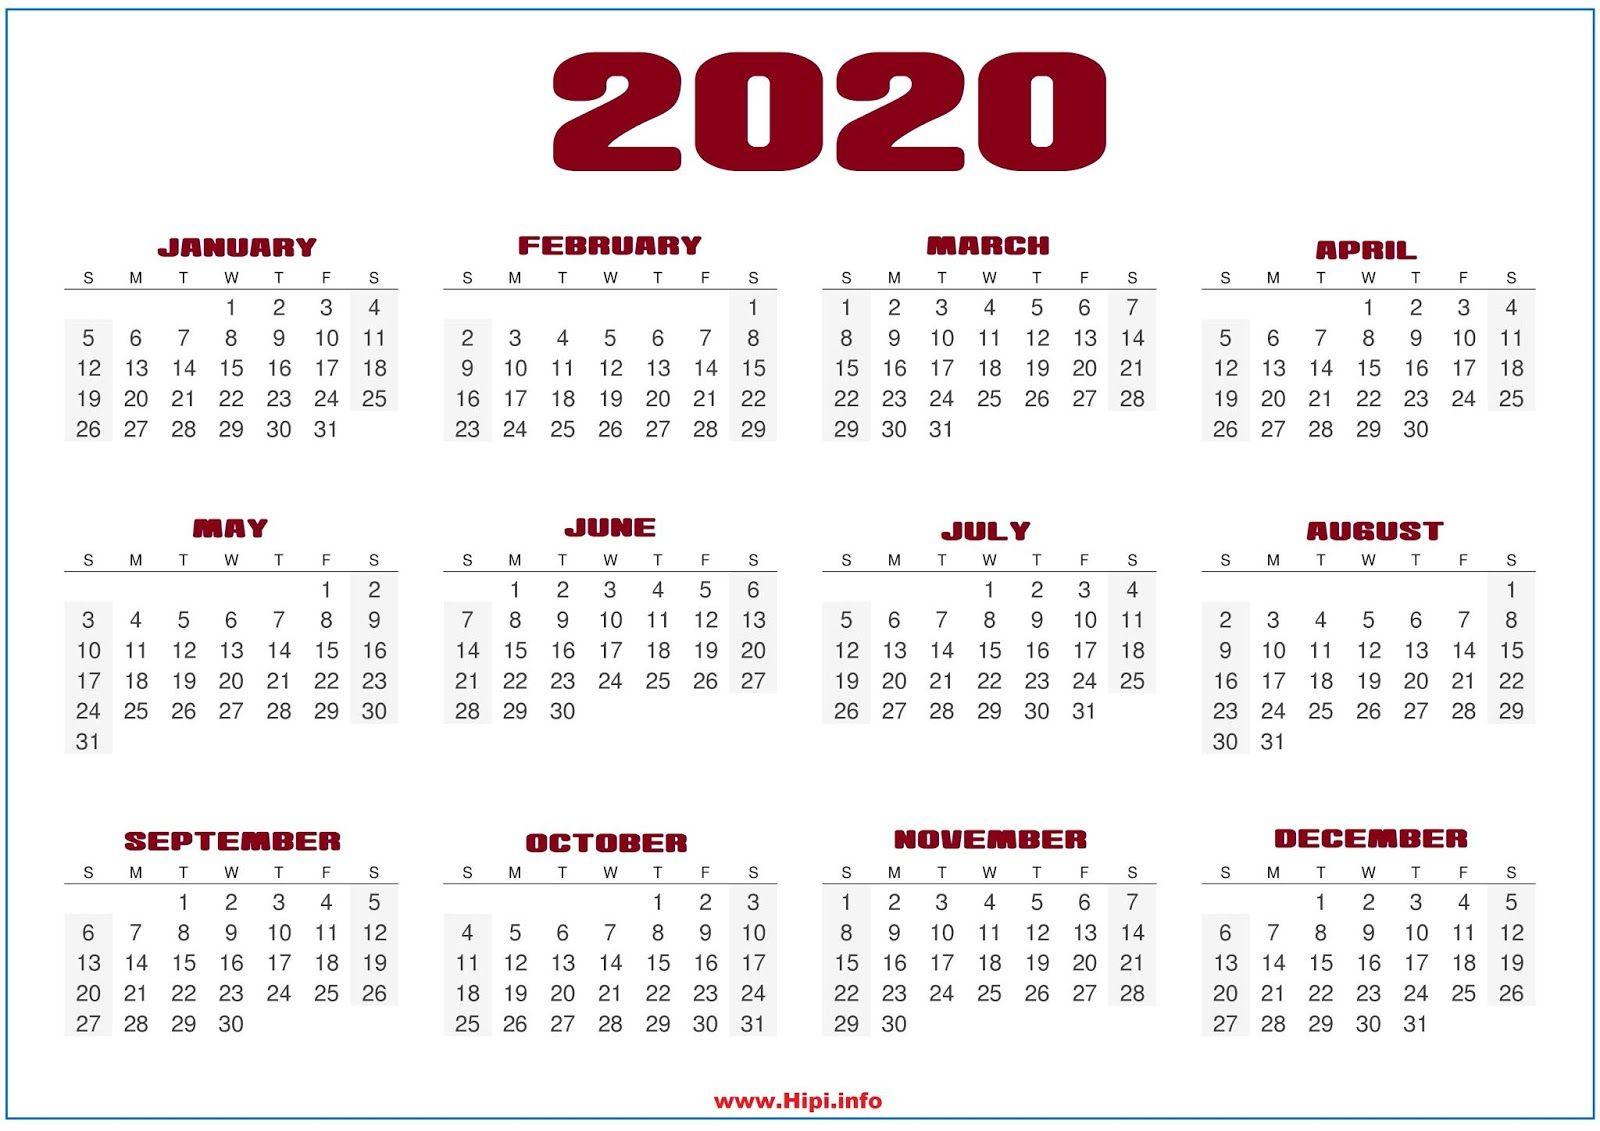 April 2020 Calendar Wallpaper Free April 2020